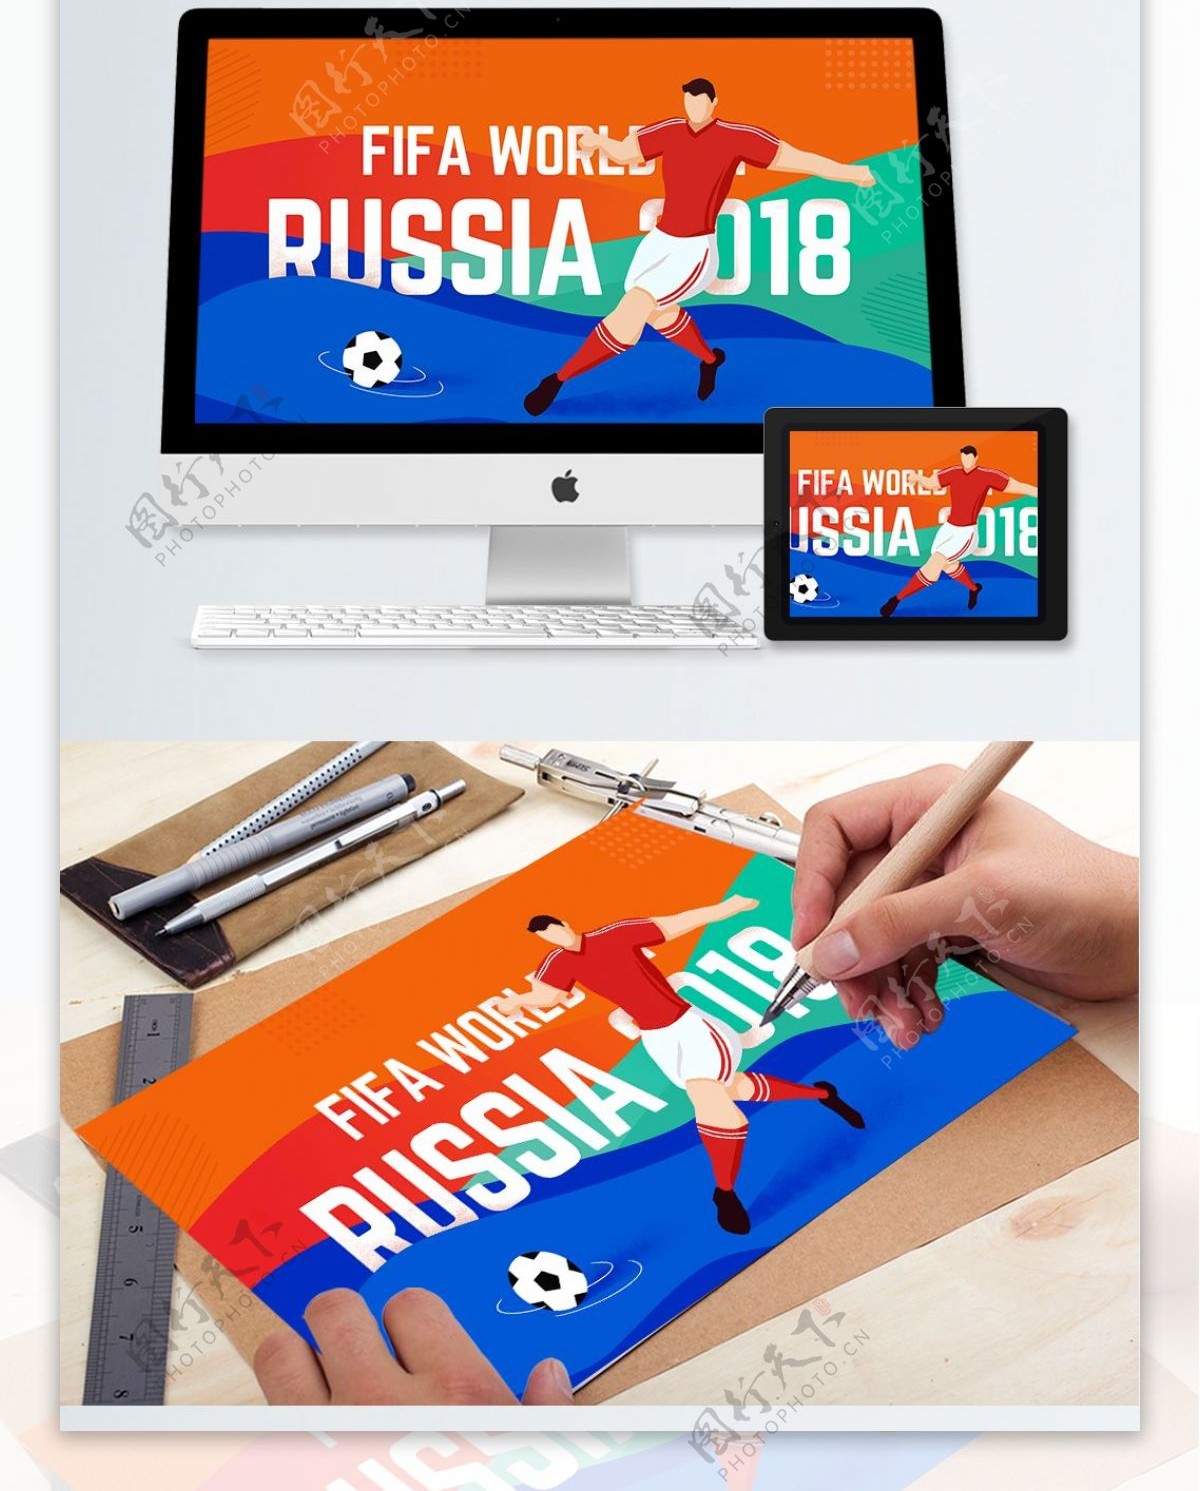 2018俄罗斯世界杯闭幕足球战队